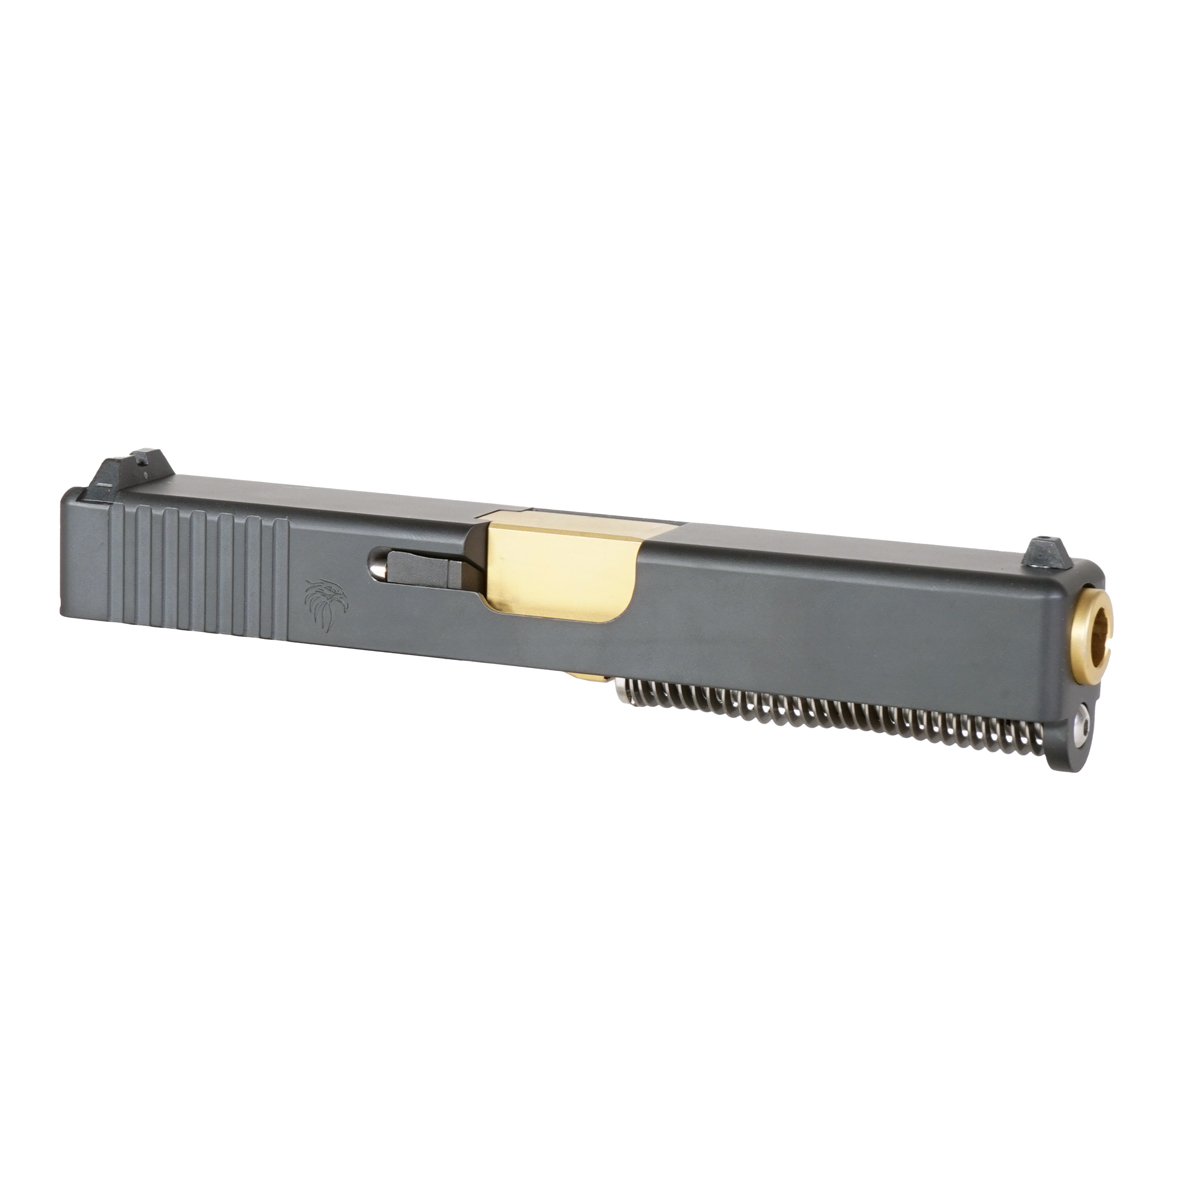 DTT 'Brigid' 9mm Complete Slide Kit - Glock 19 Gen 1-3 Compatible